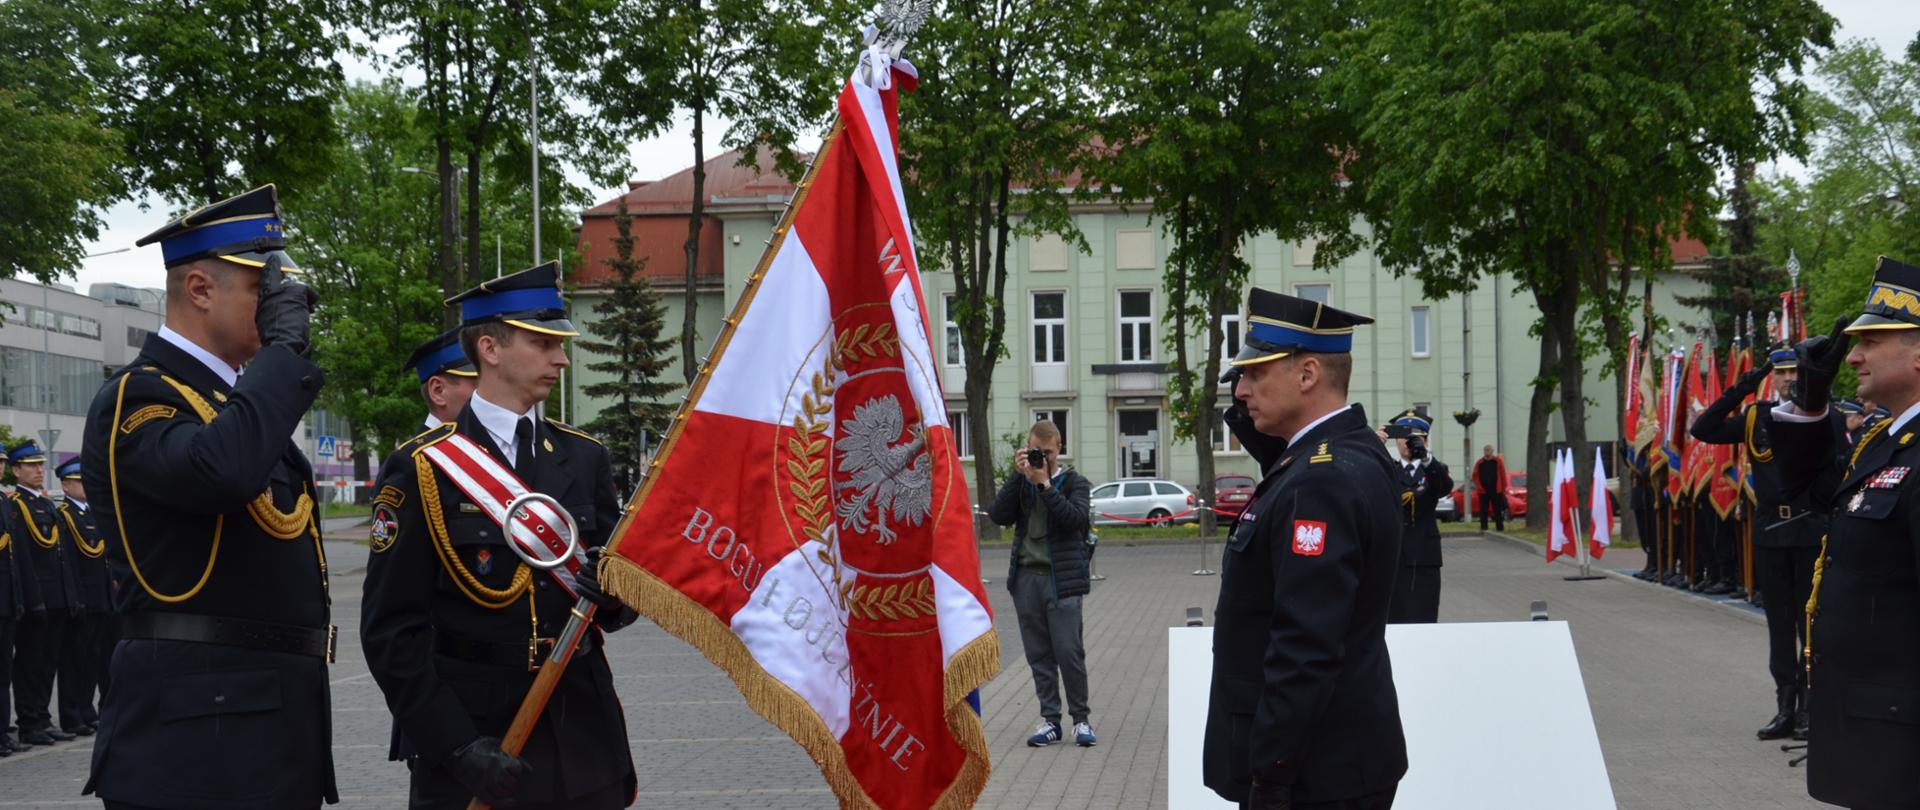 Uroczystość Wojewódzkich obchodów Dnia Strażaka oraz nadanie sztandaru Komendzie Powiatowej Państwowej Straży Pożarnej w Zawierciu.